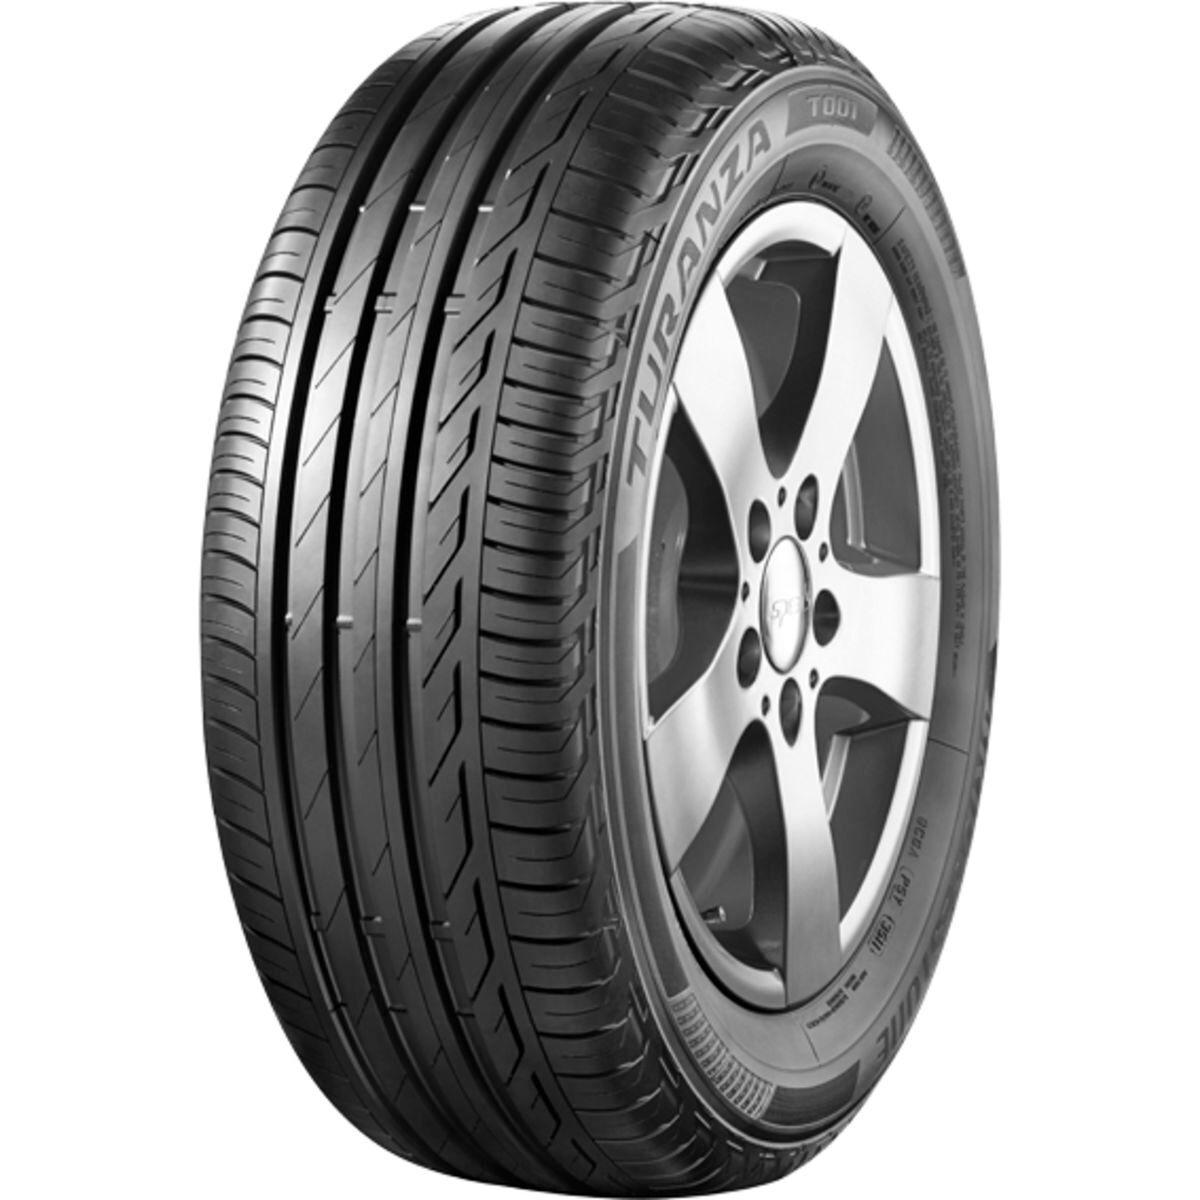 Neumáticos de verano BRIDGESTONE Turanza T001 195/60R16 89H